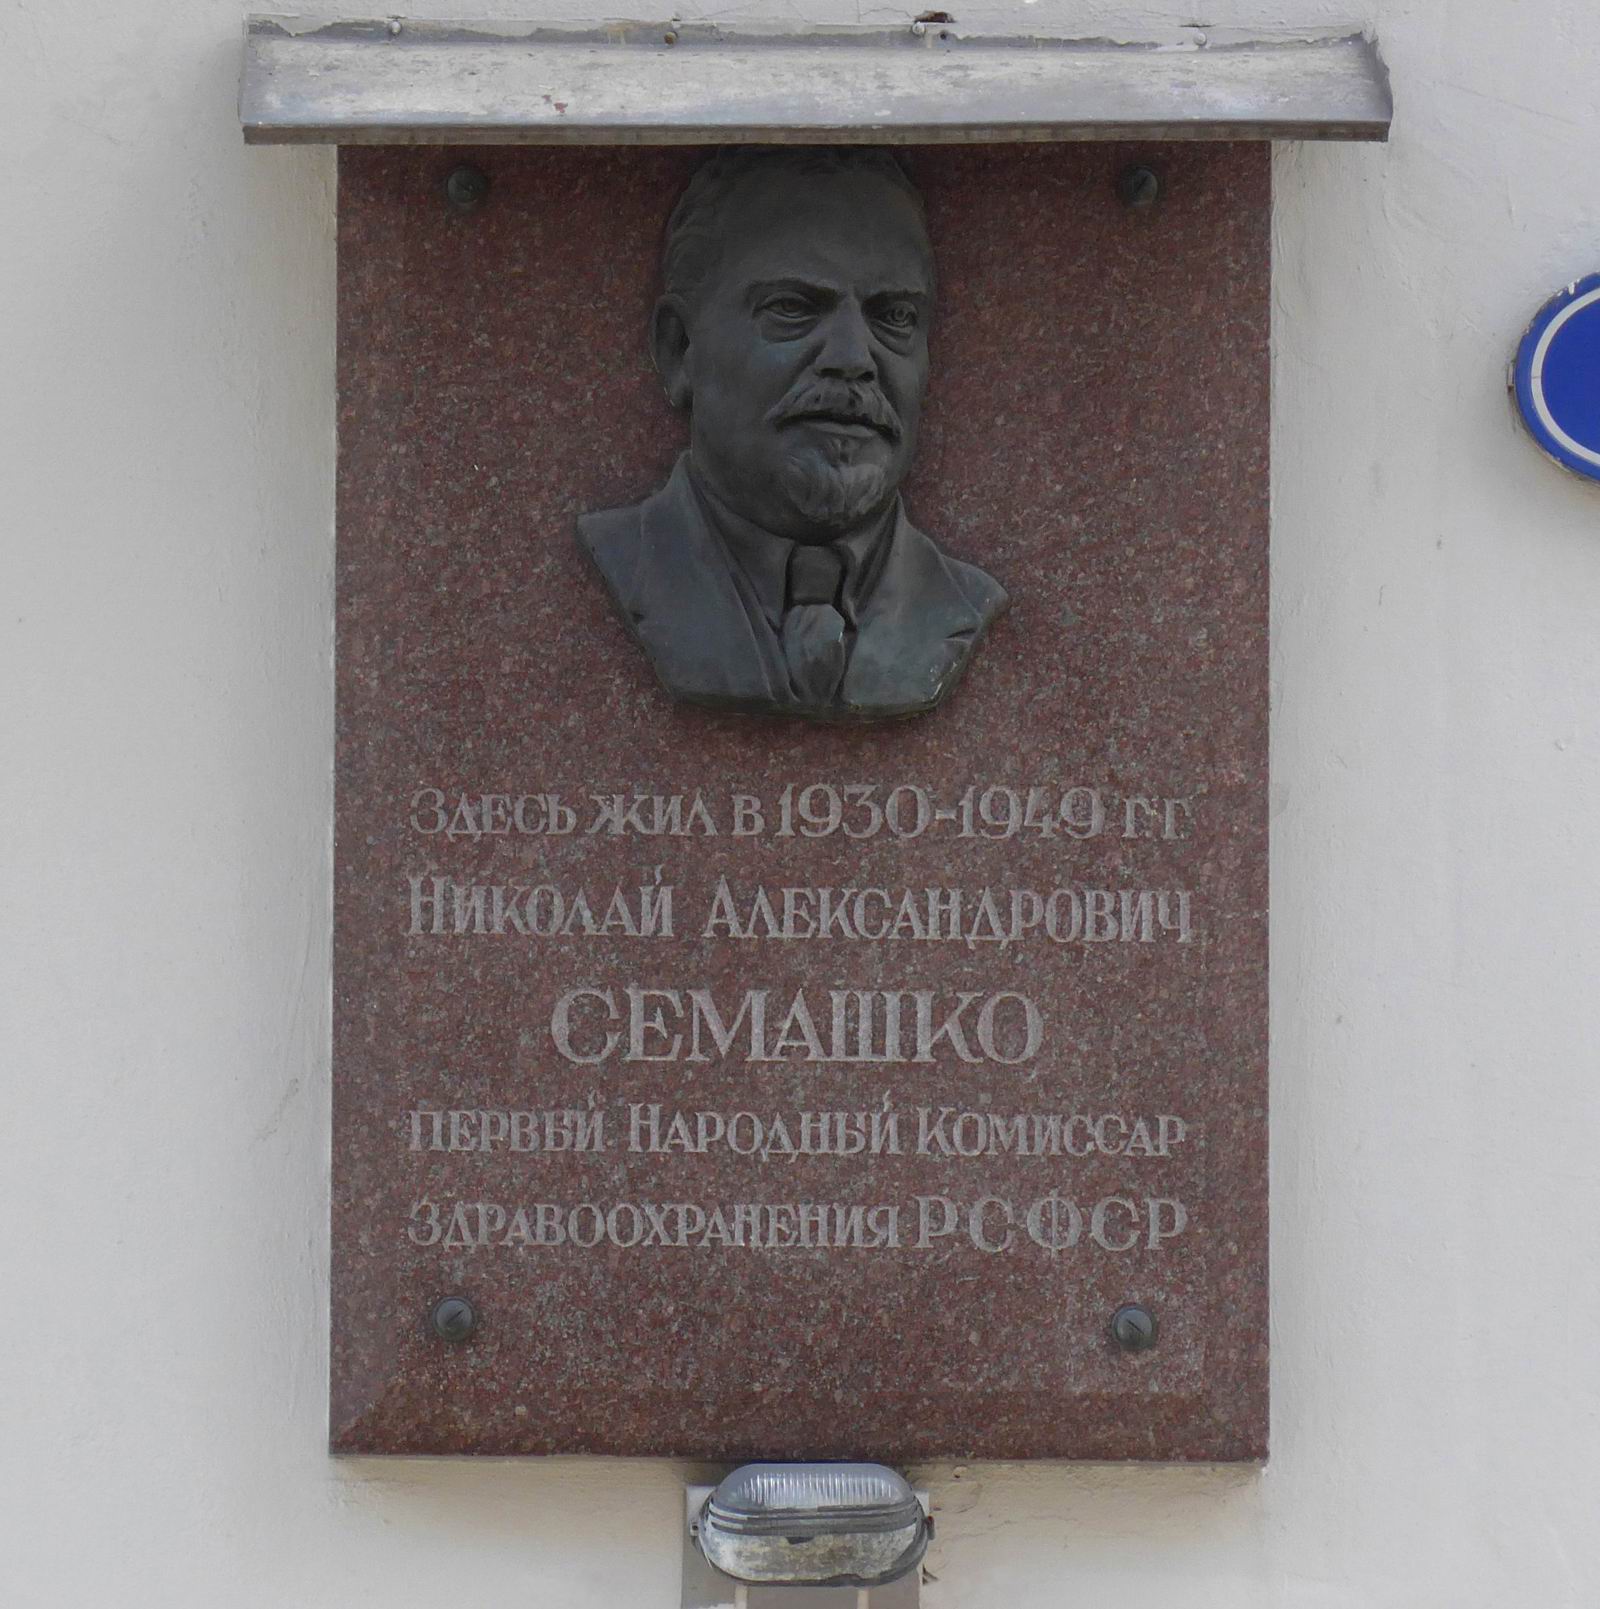 Мемориальная доска Семашко Н.А. (1874-1949), ск. С.К.Тимашкова, в Большом Кисловском переулке, дом 5, открыта 19.2.1957.